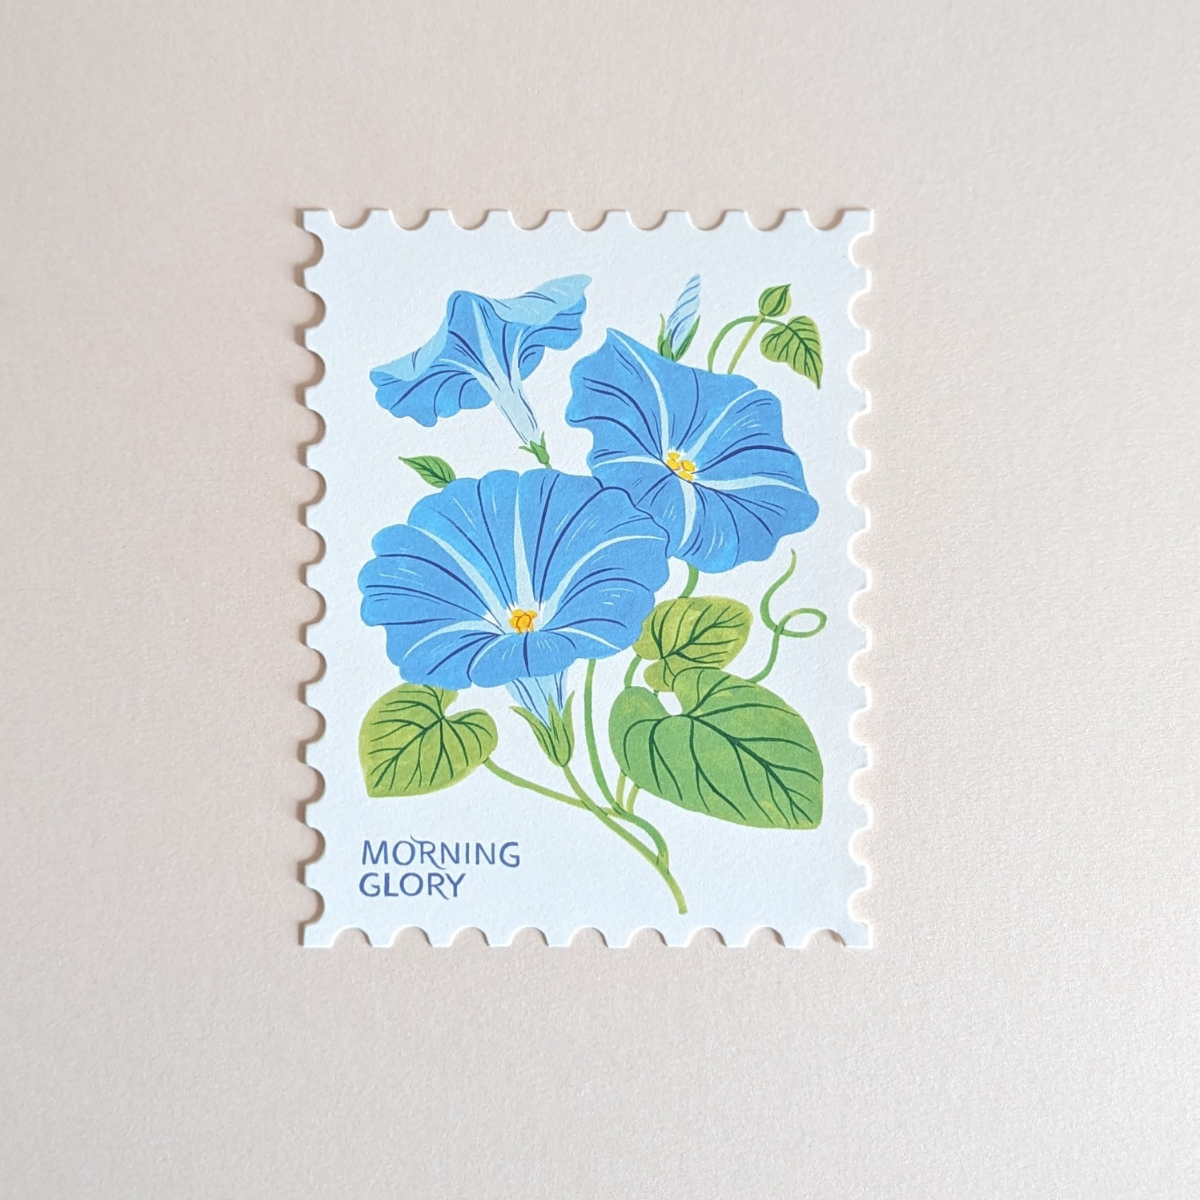 La carte met en avant une illustration détaillée de la fleur "Gloire du Matin" dans des tons de bleu captivants.